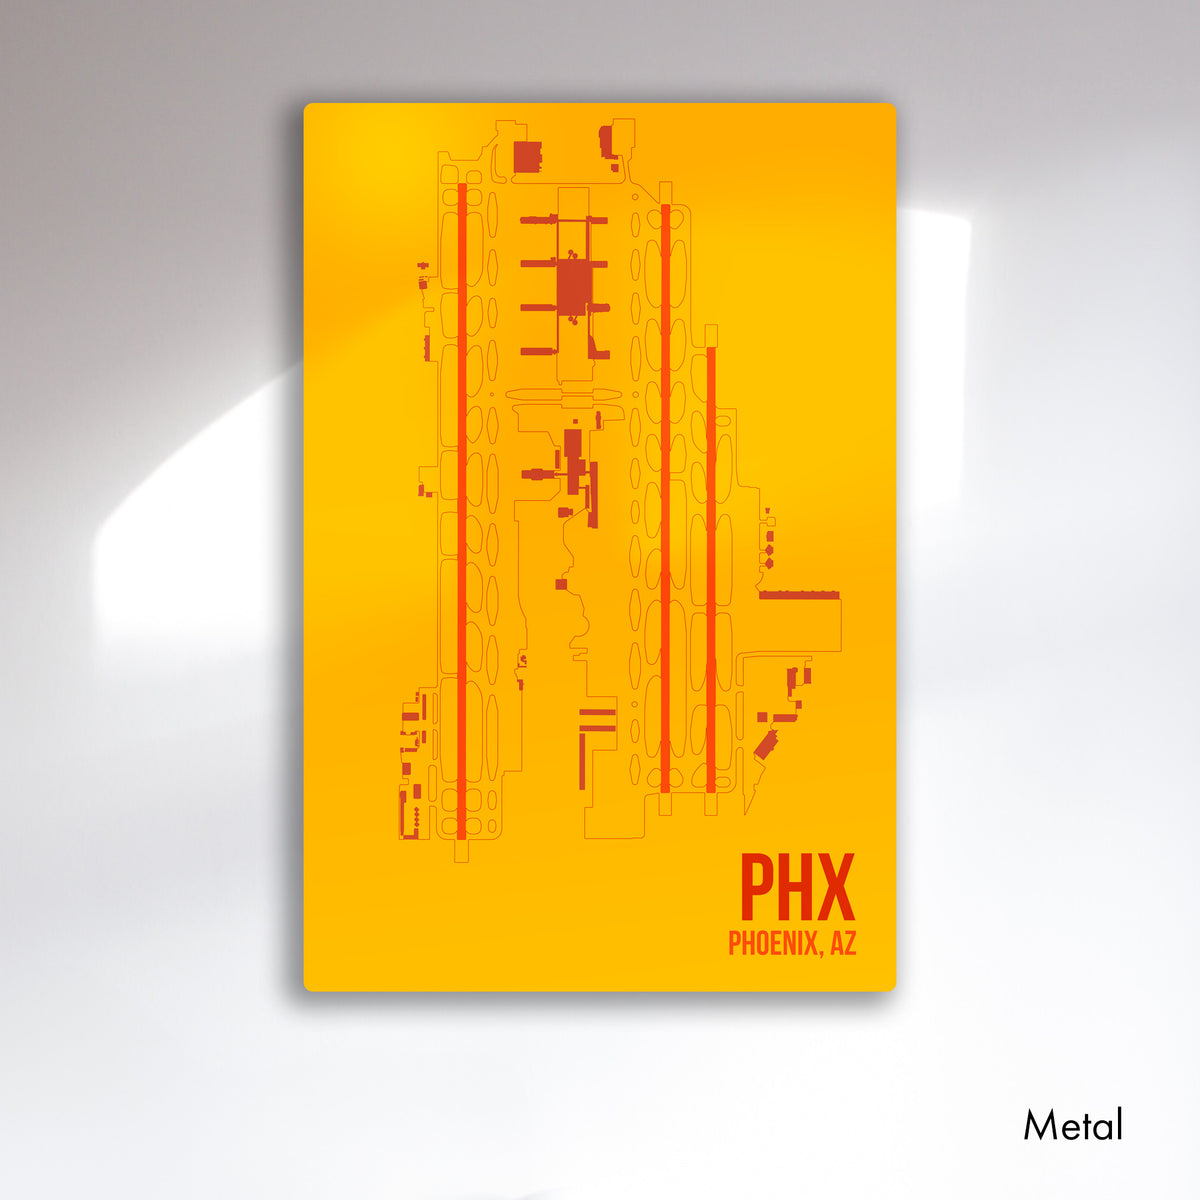 PHX | PHOENIX